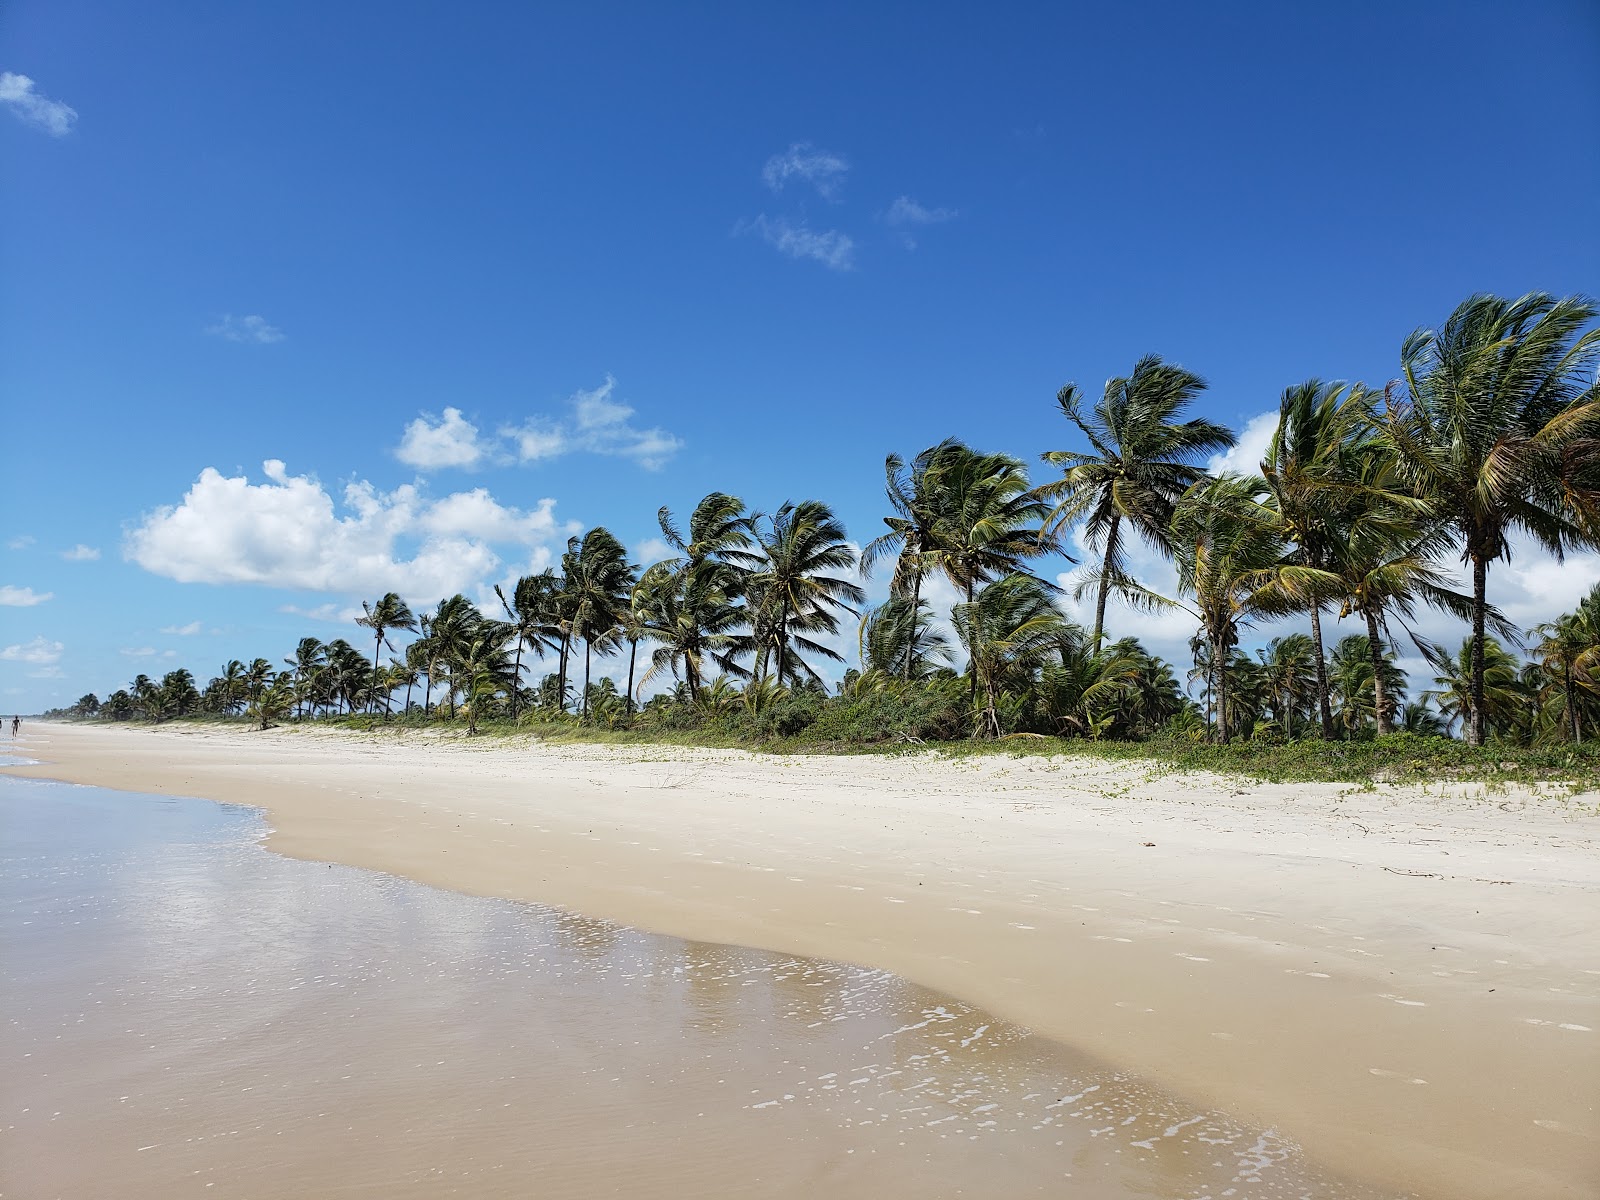 Praia da ilha de Comandatuba'in fotoğrafı - rahatlamayı sevenler arasında popüler bir yer